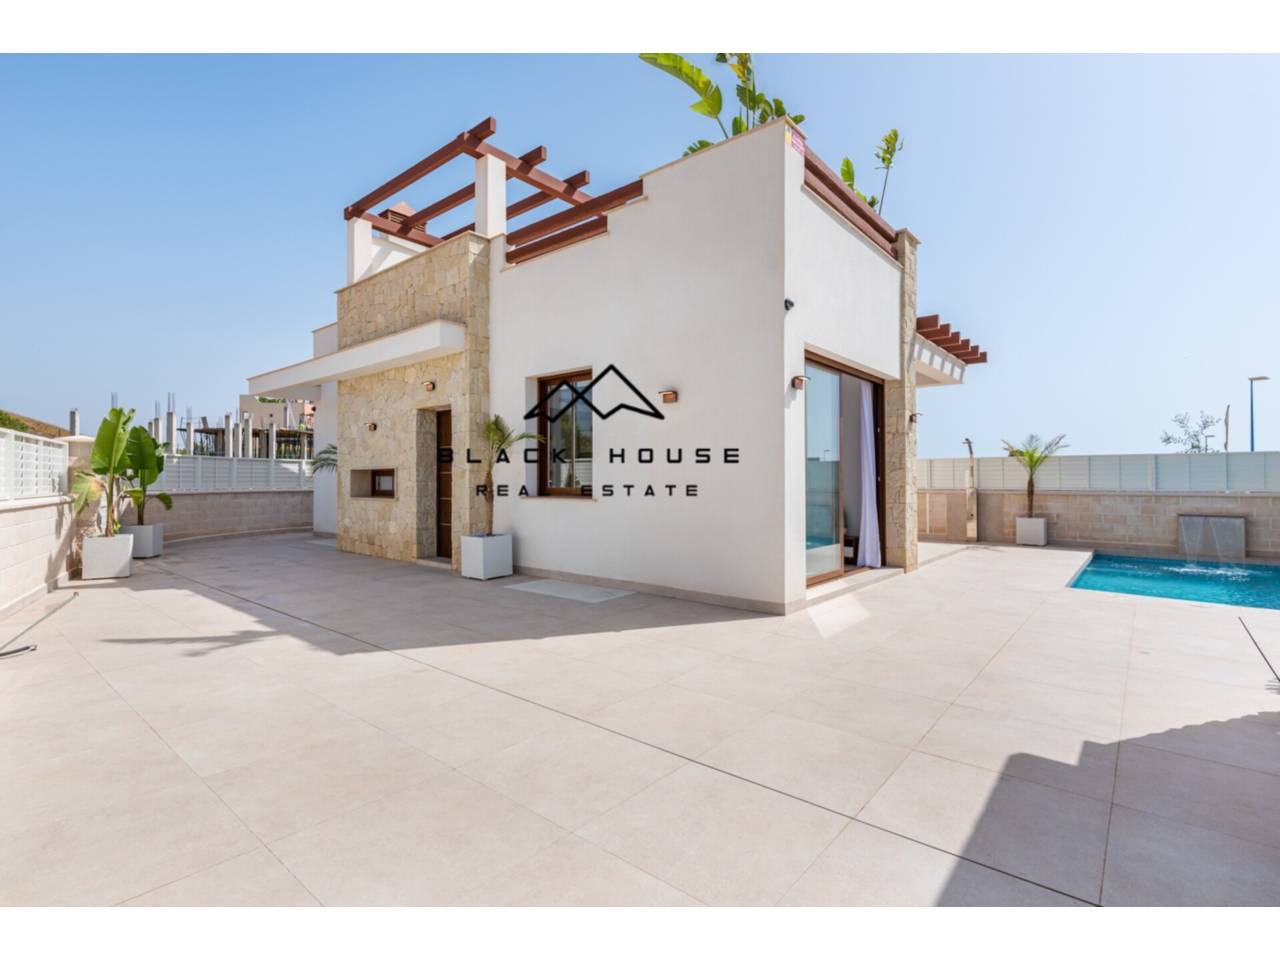 Promotion de nouvelles constructions, dans une zone côtière touristique à Almería